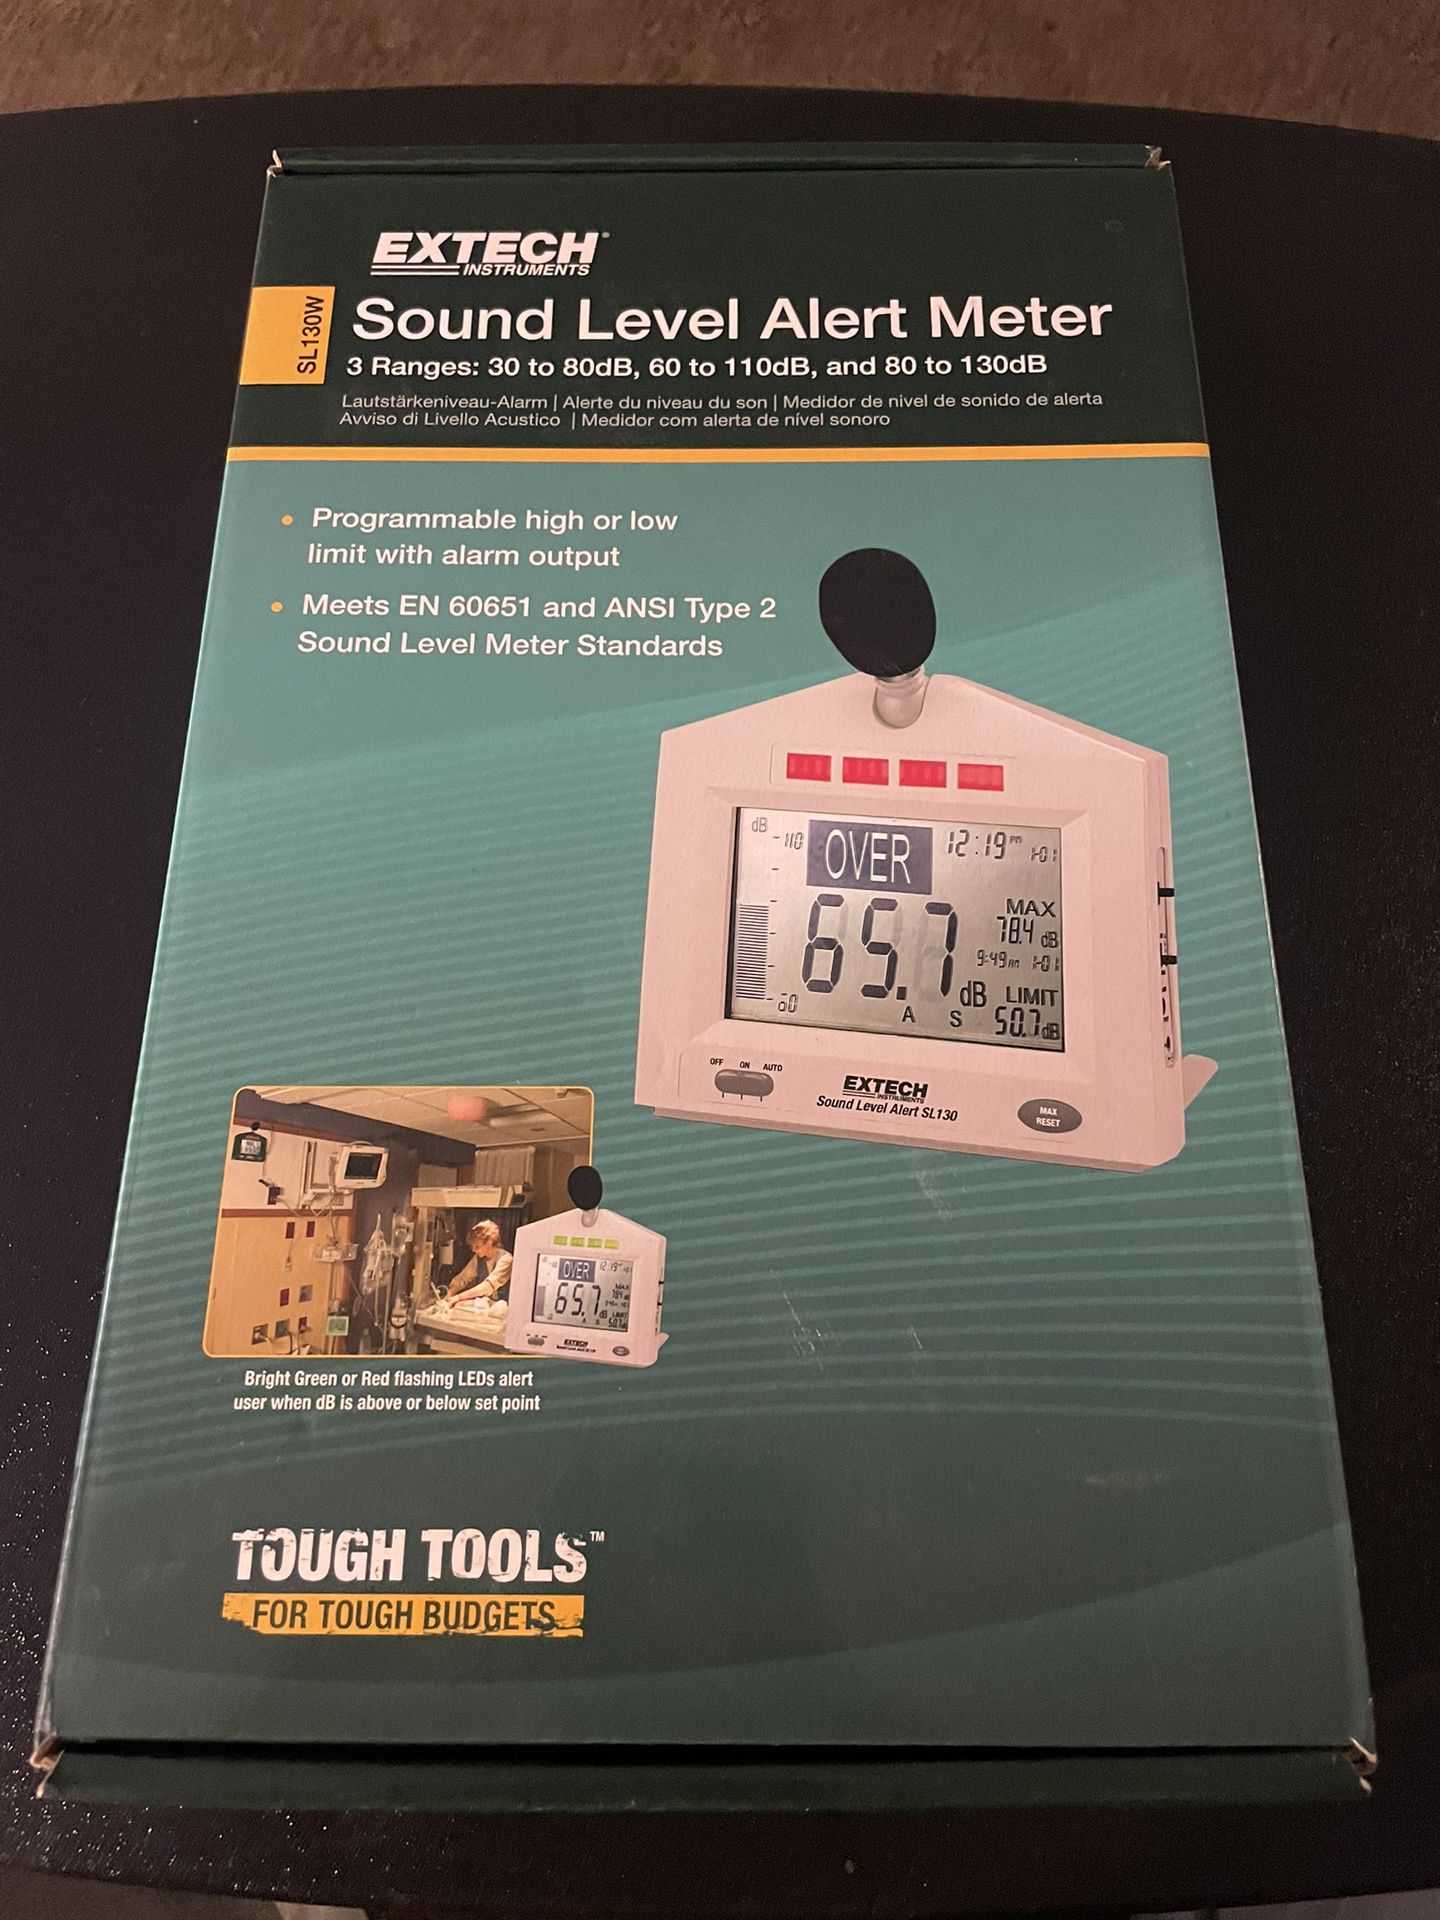 Sound Level Alert Meter